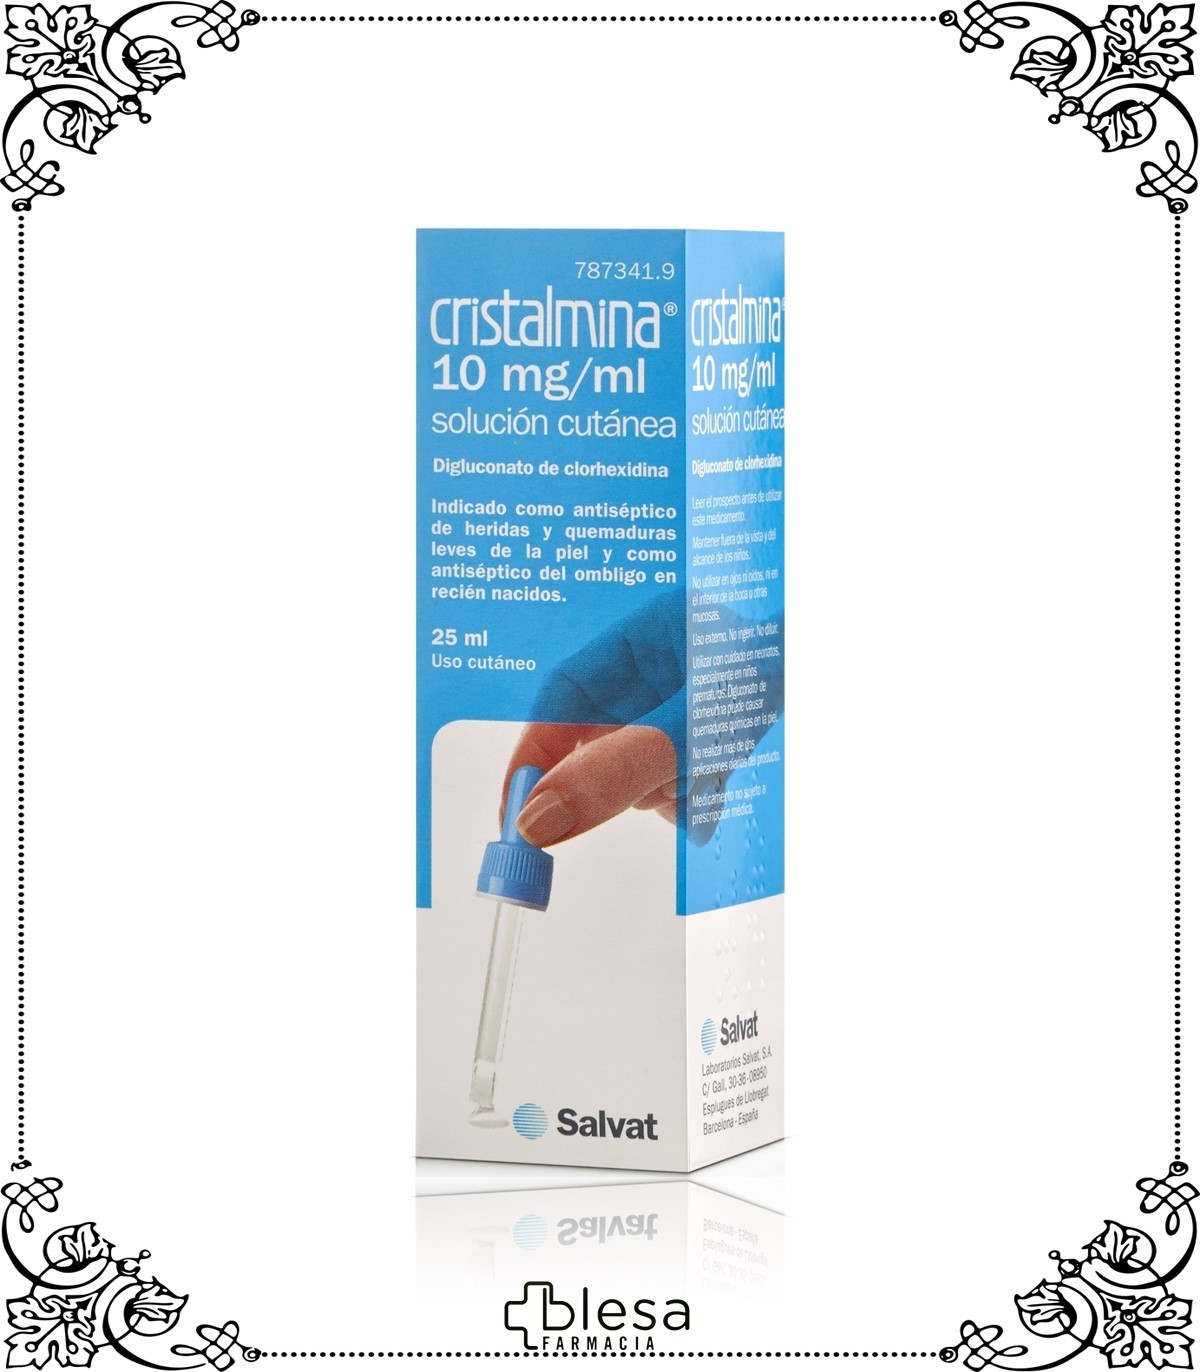 Cristalmina spray solución pulverización cutánea 25 ml Envío